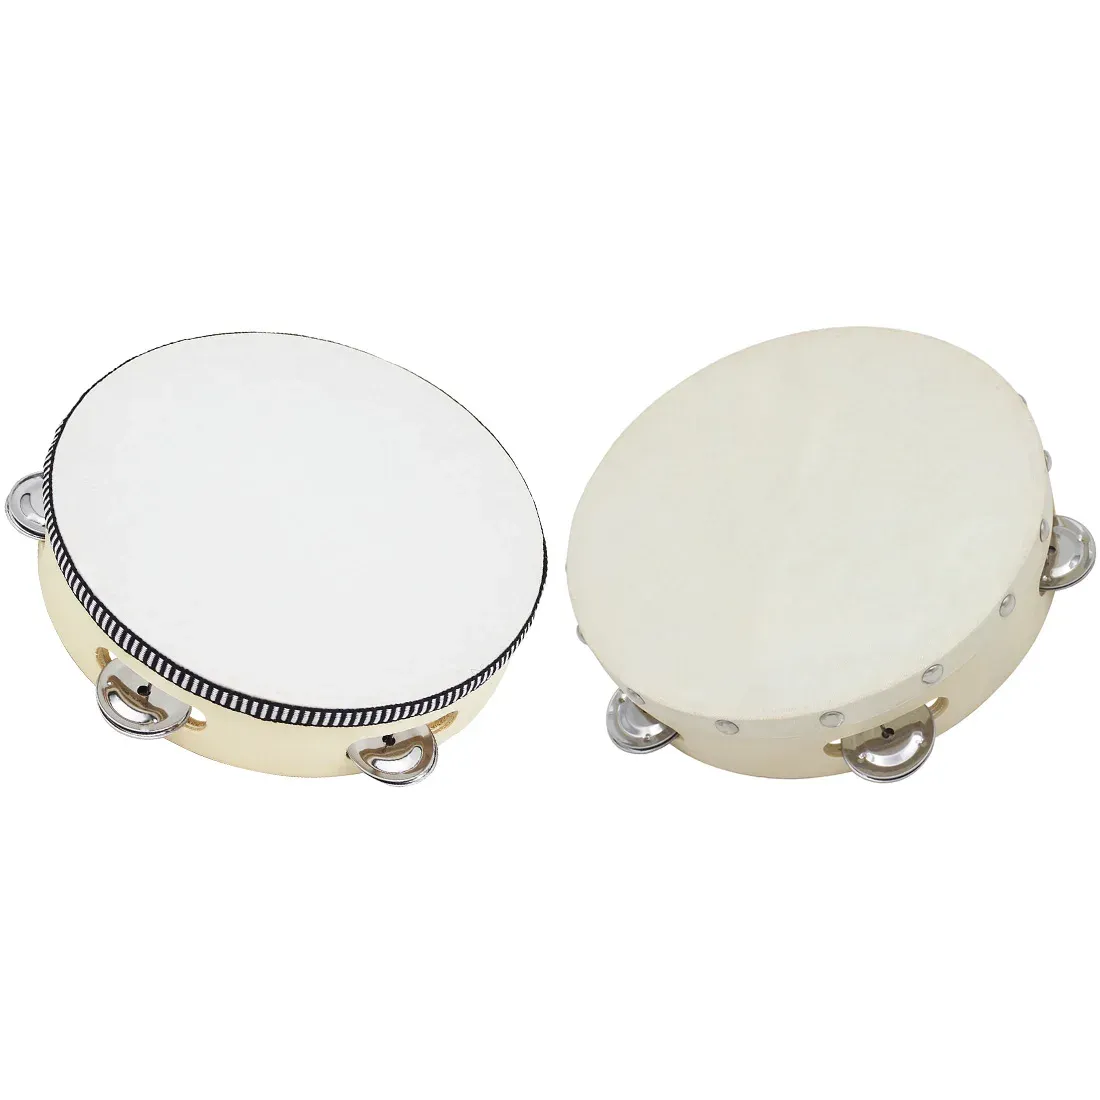 Instrumenten 8 inch Tamboerijn Drum Hoge kwaliteit Handwerkte Bell Drums Houten Tambourine Percussion Toys For Kids Educatieve instrumenten